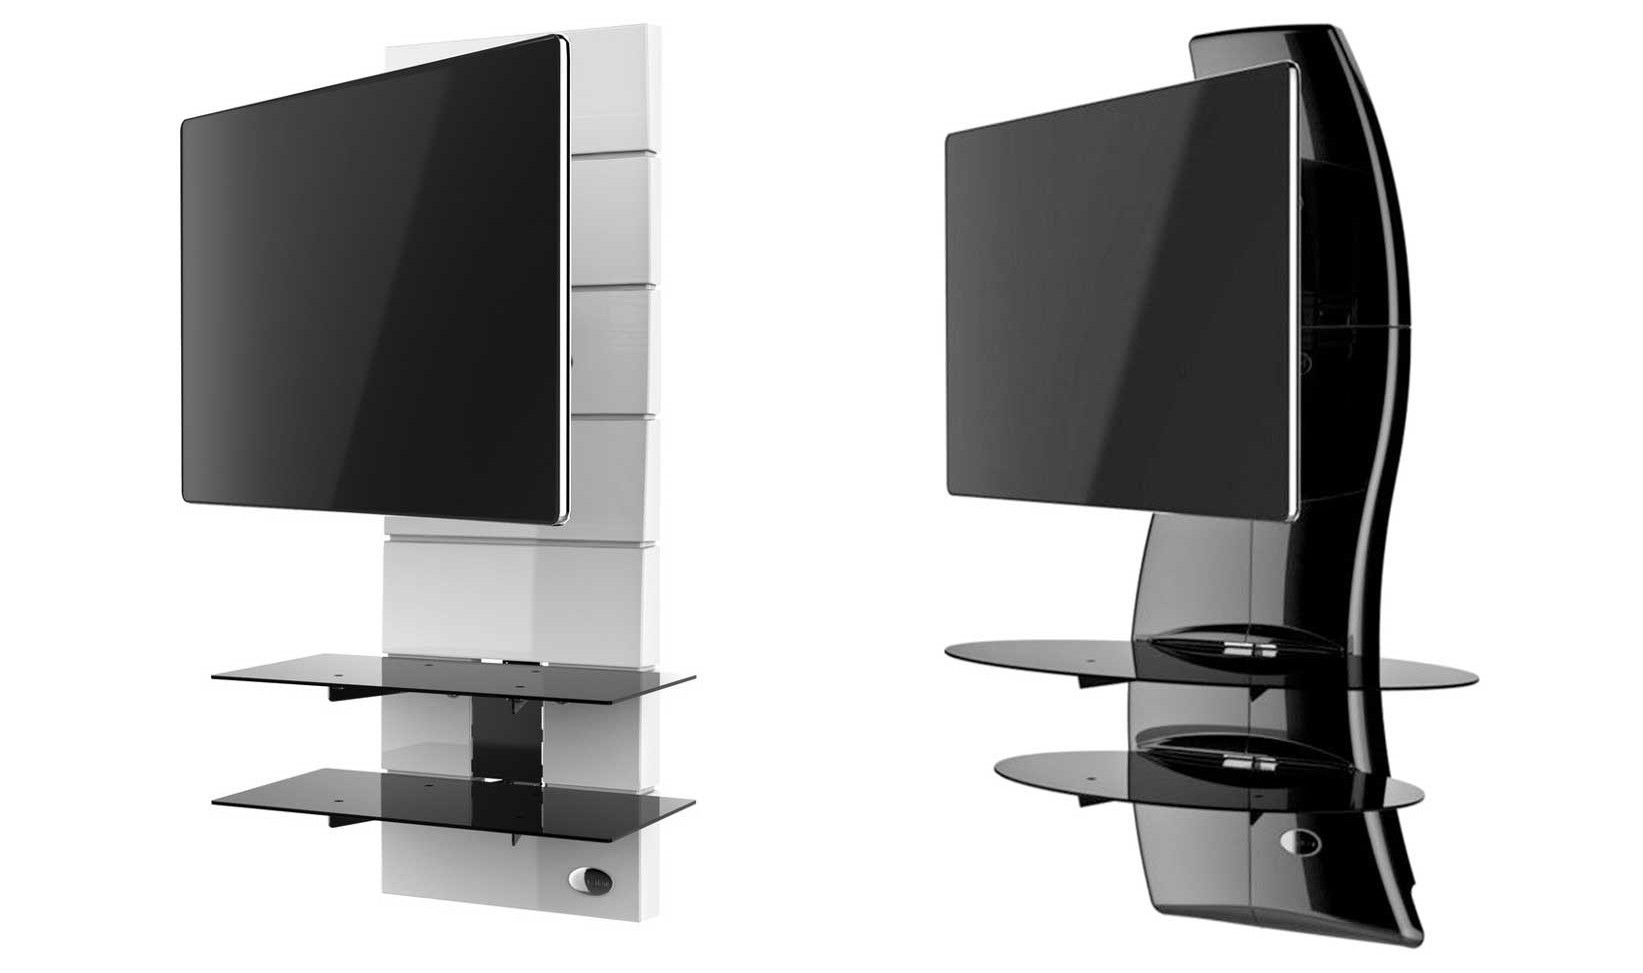 nowoczesny i elegancki panel RTV z półkami oraz maskownicą na kable